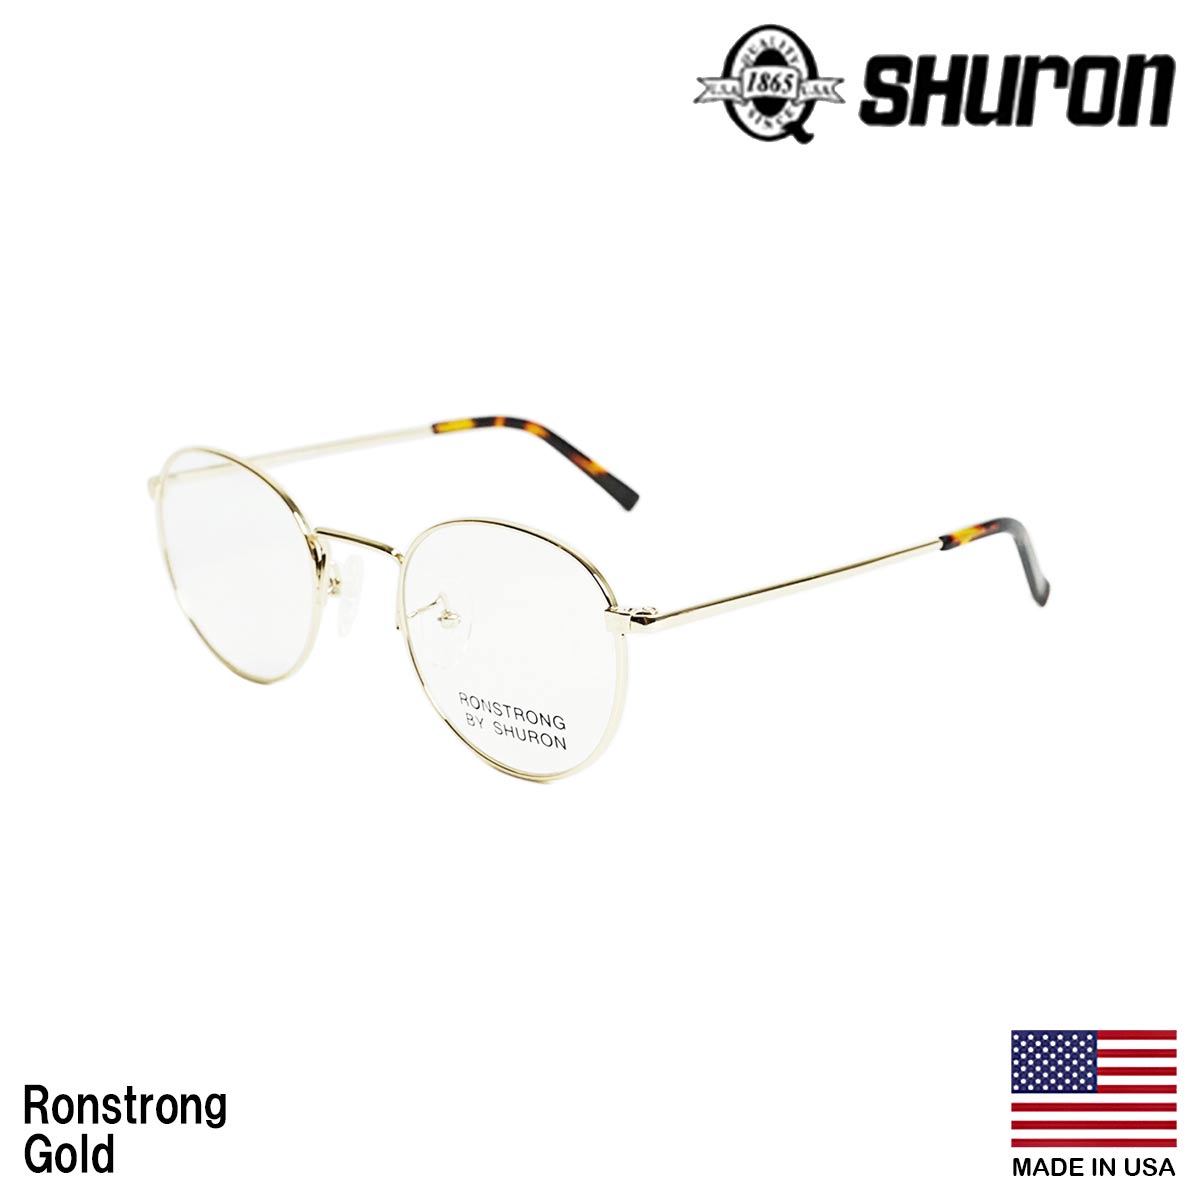 大幅に値引き シュロン SHURON メガネ フレーム ロンストロング 眼鏡 アメリカ製 米国製 ボストン メタルフレーム ゴールド シルバー